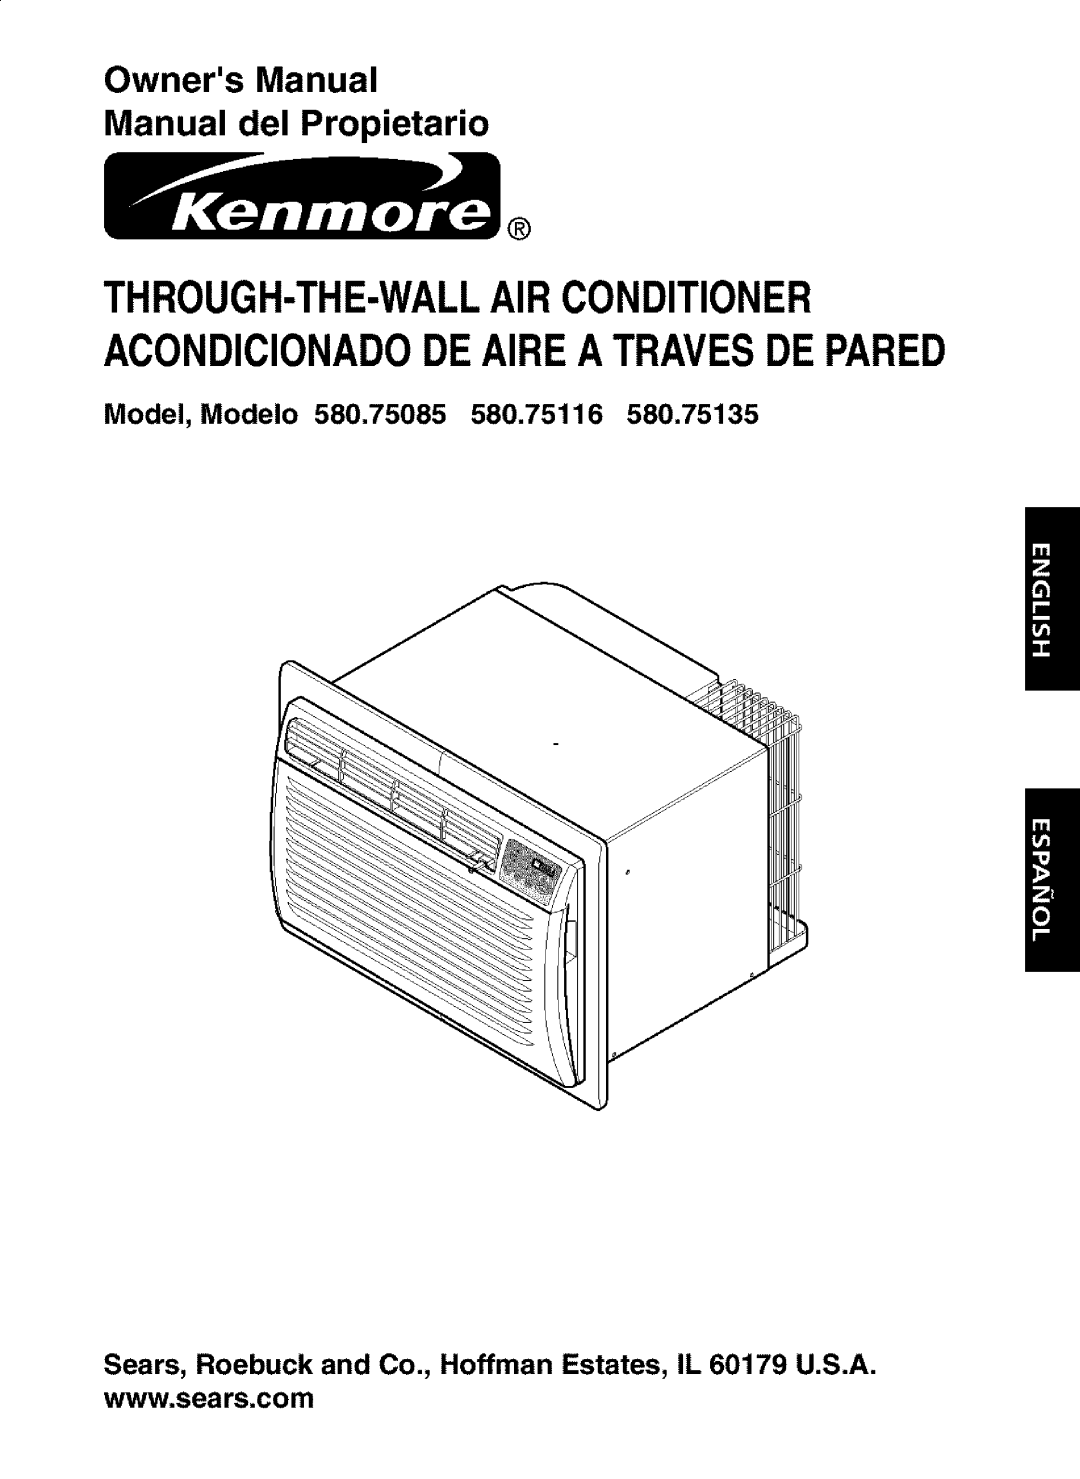 Kenmore 580.75085, 580.75135, 580.75116 owner manual Model, Modelo, OwnersManual Manual del Propietario 